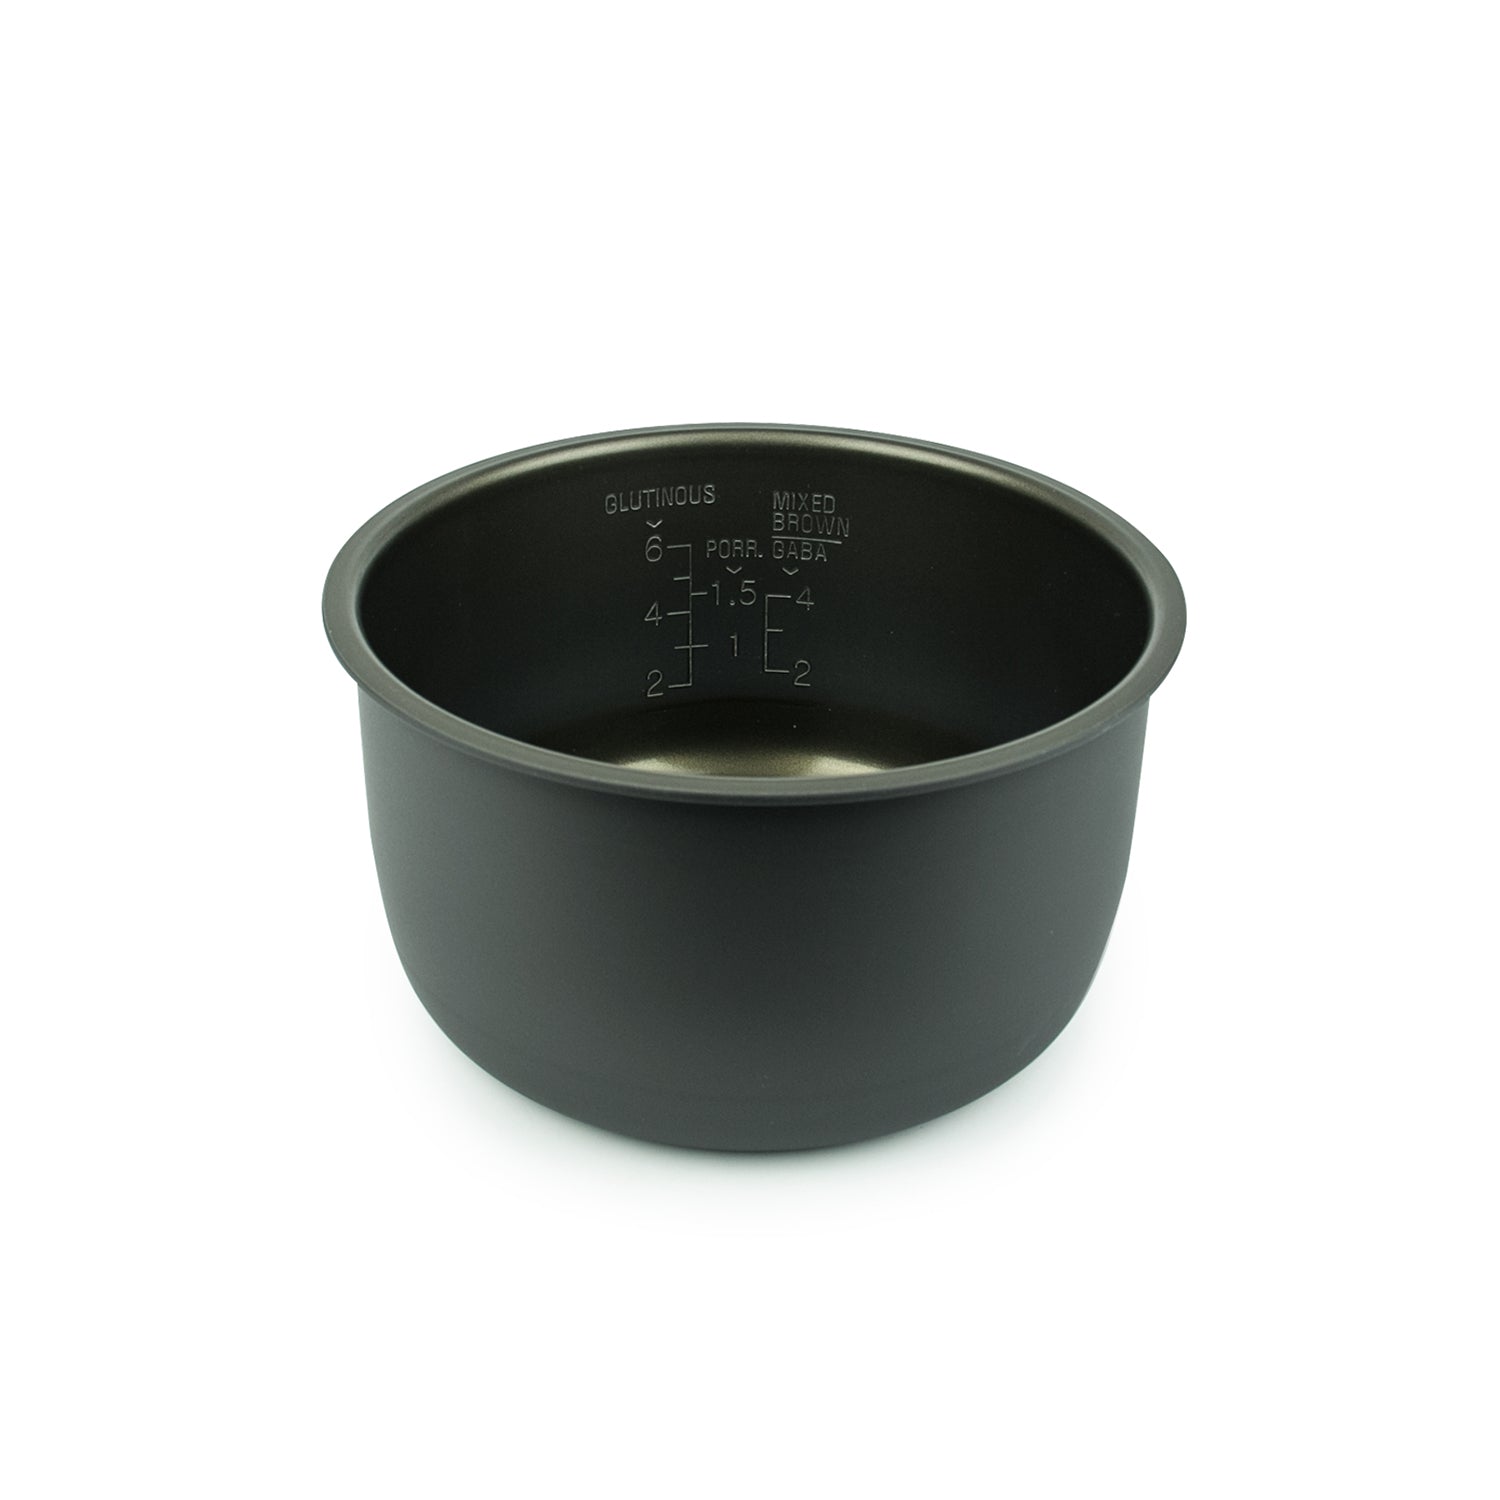 CUCKOO Inner Pot for CR-0631 (not CR-0631F) Rice Cooker